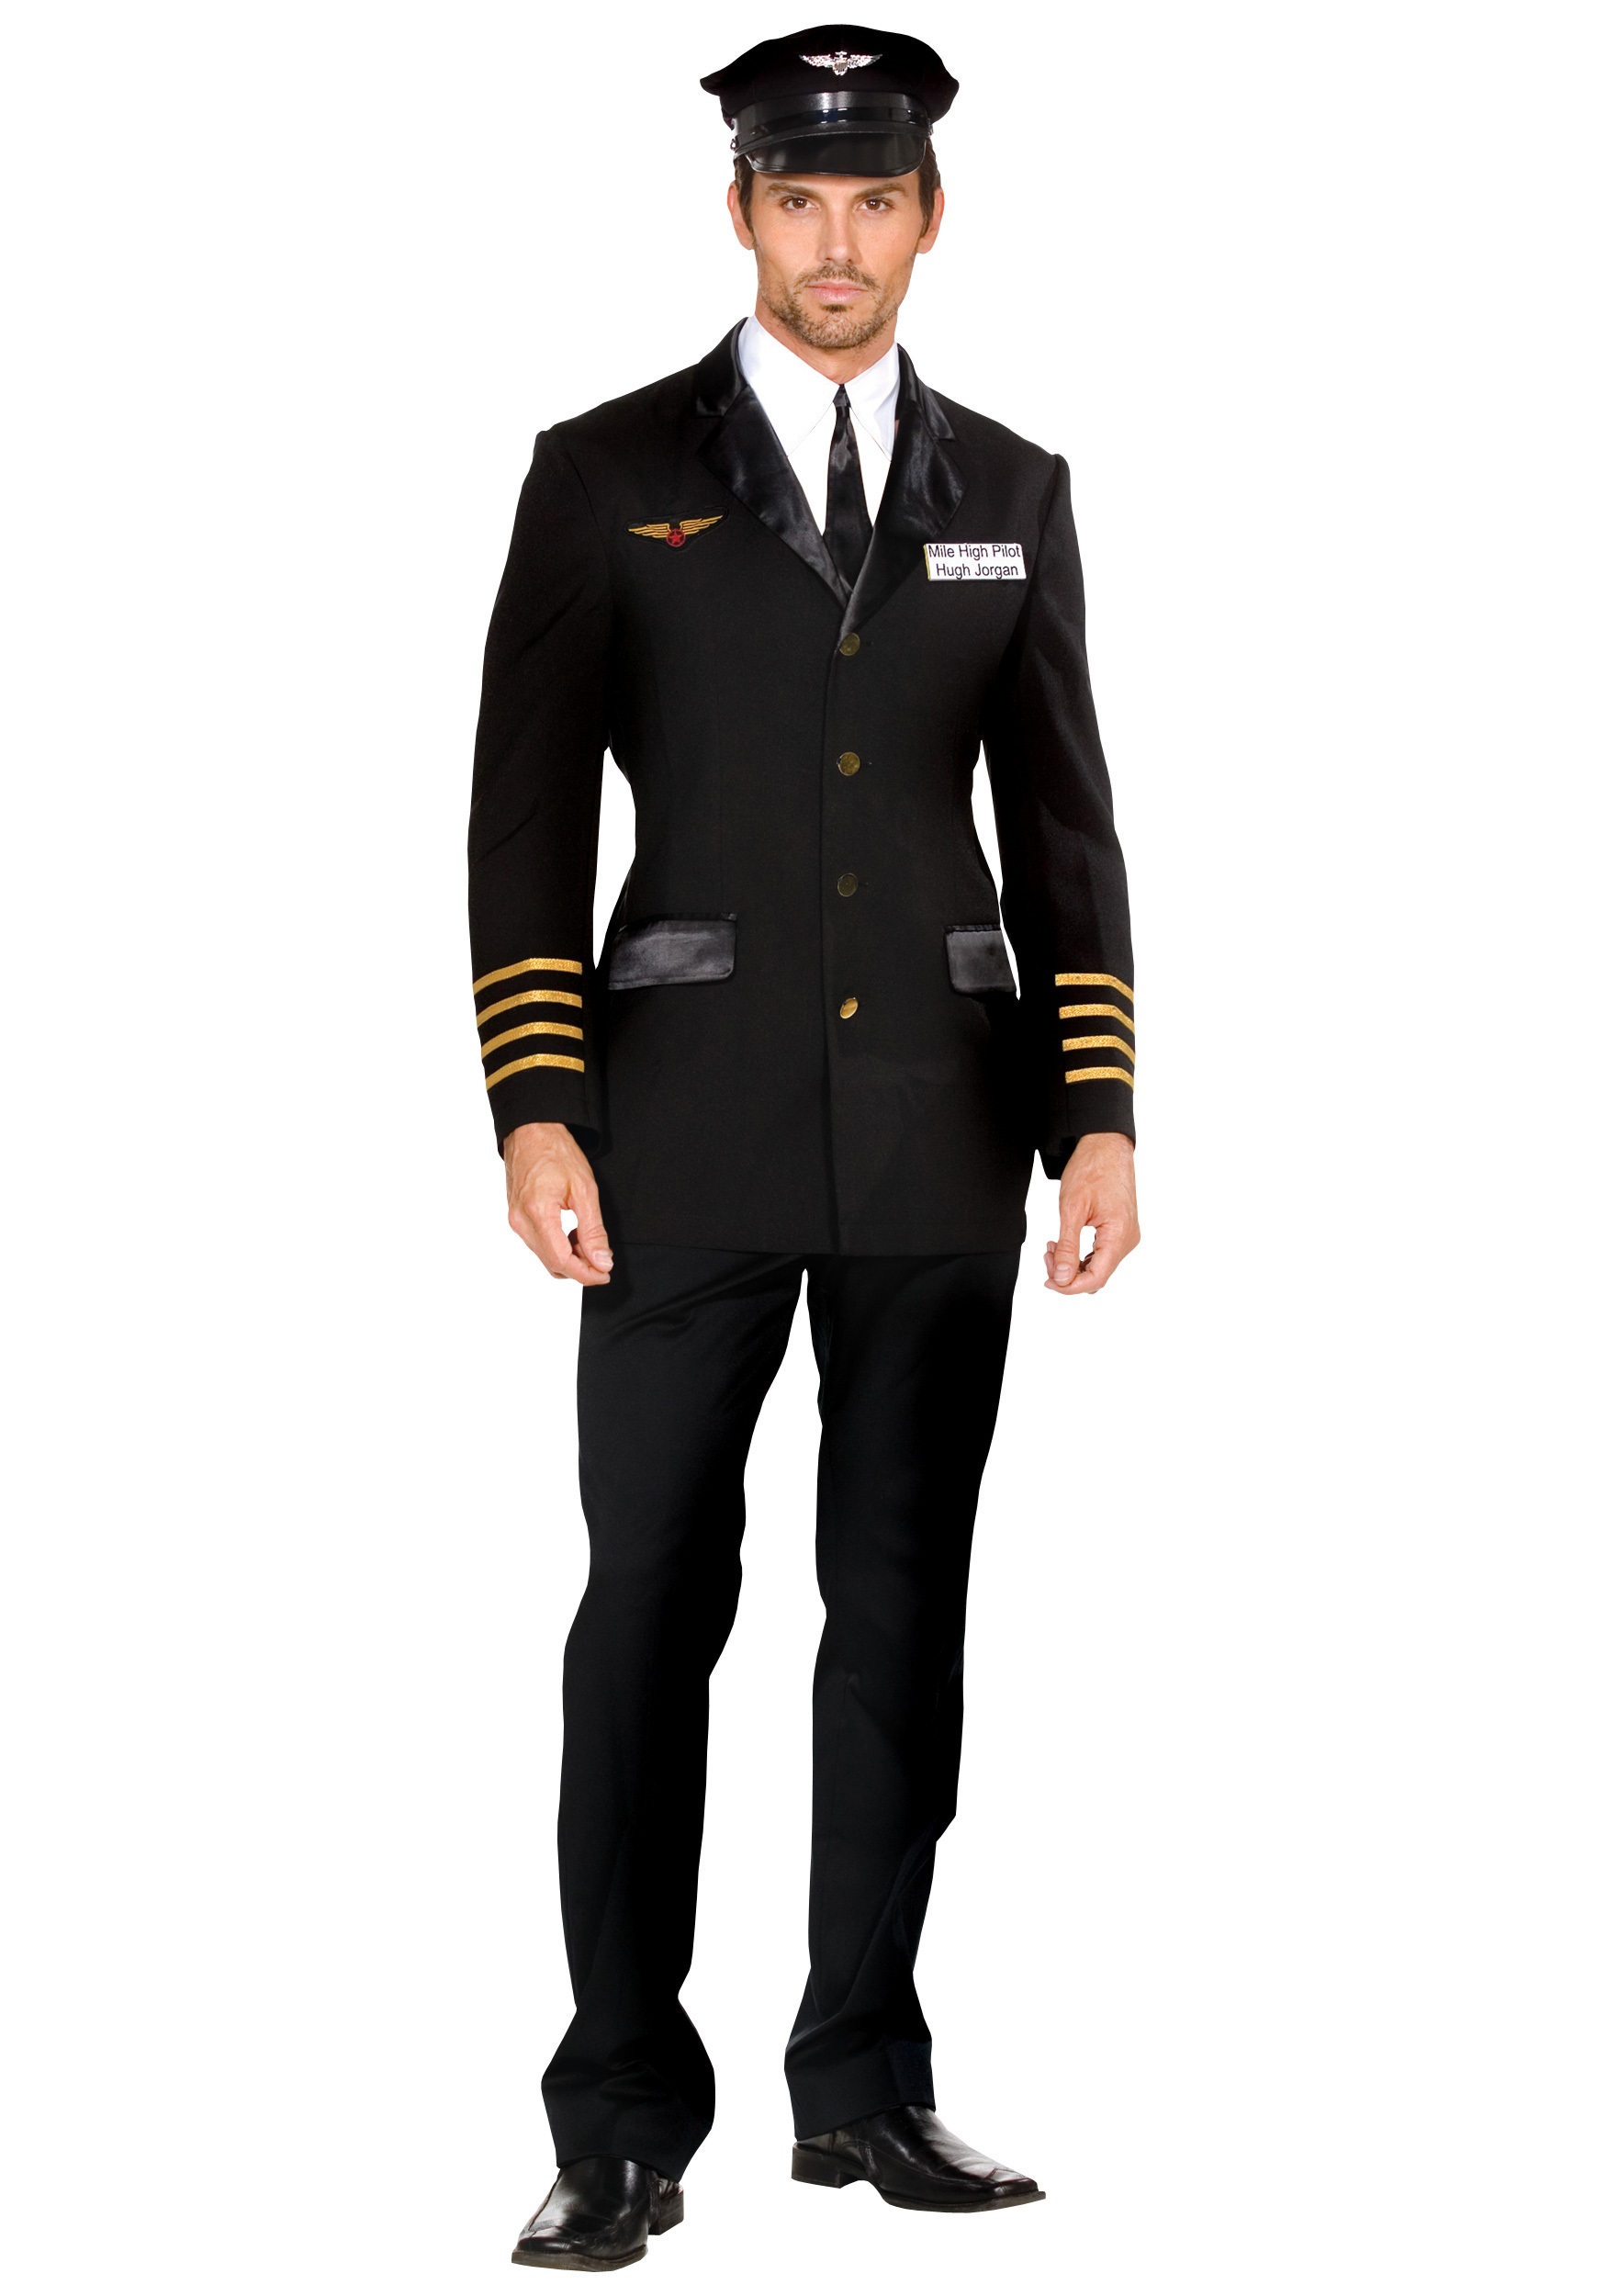 Mile High Men's Pilot Costume